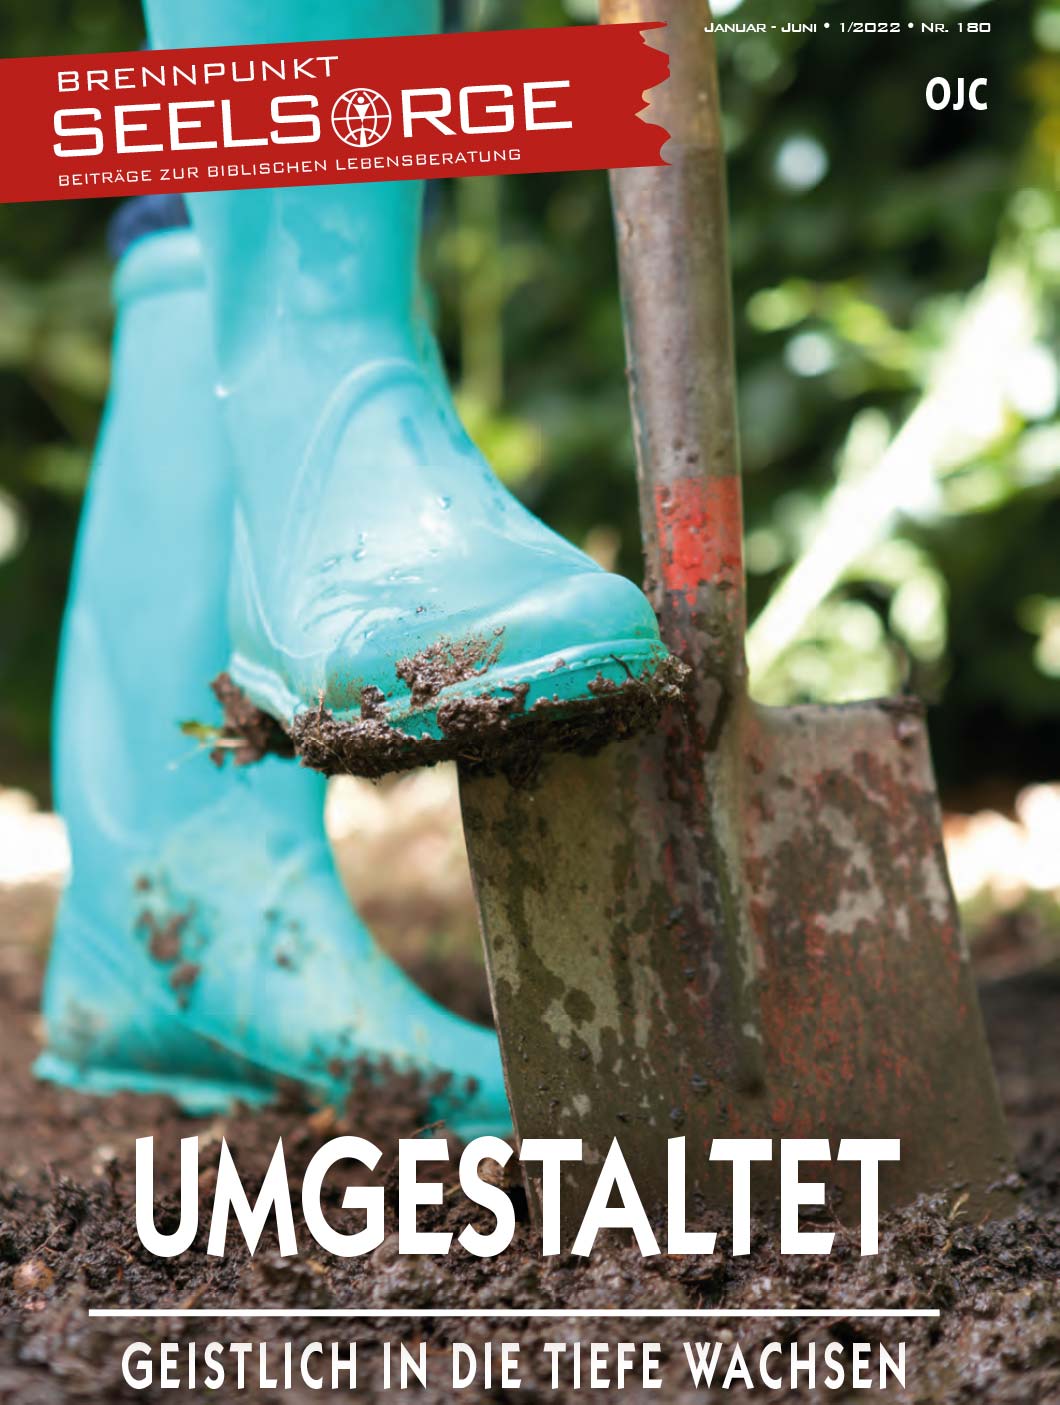 Brennpunkt-Seelsorge: Magazin-Cover Umgestaltet